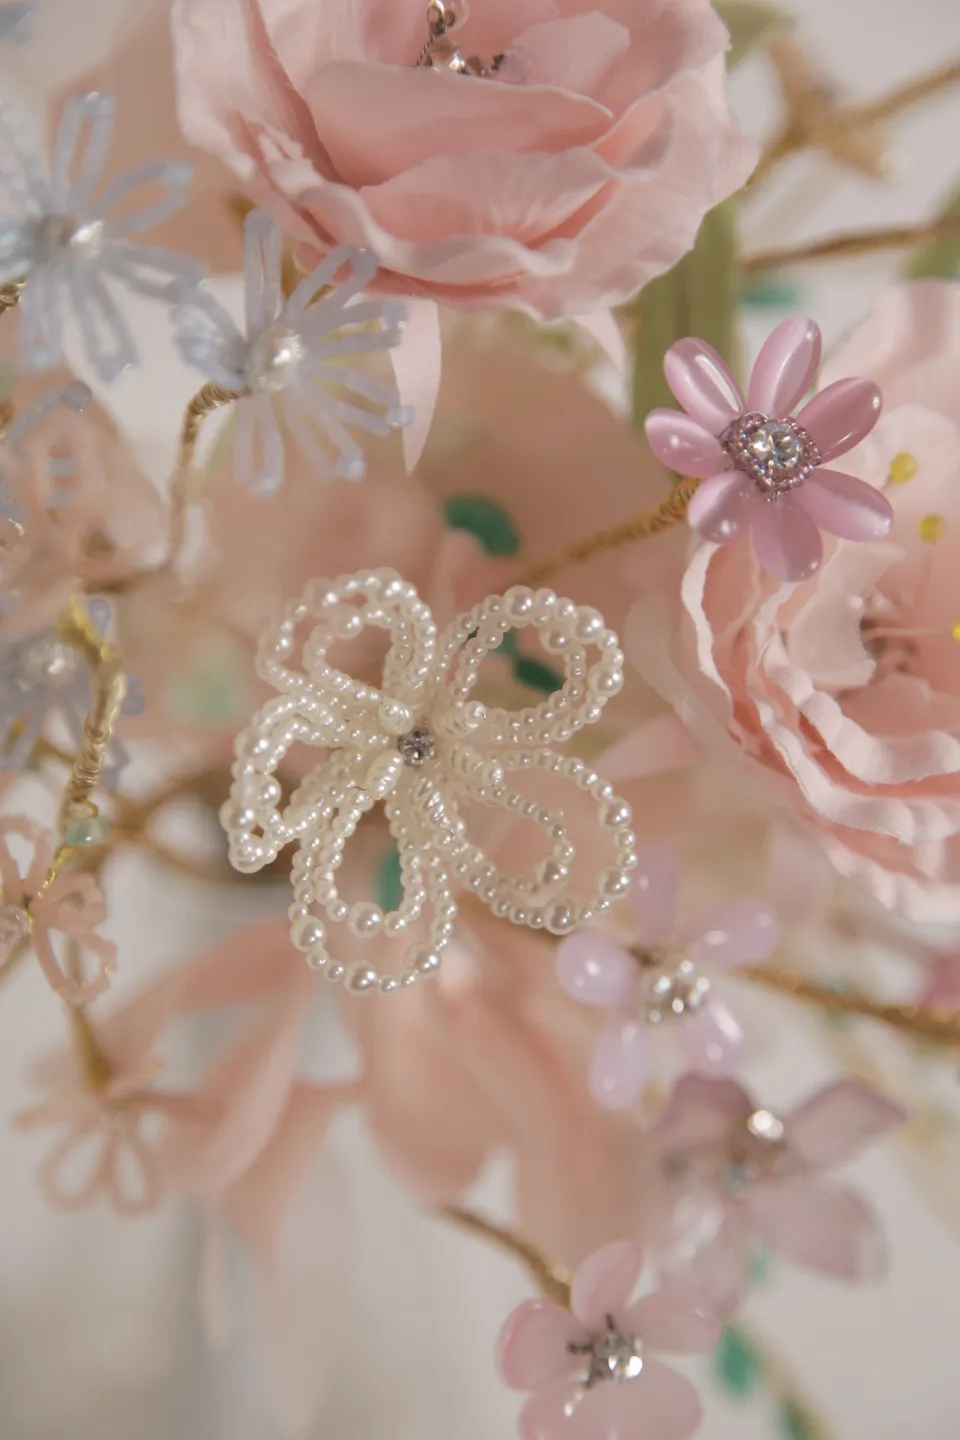 洋桔梗流線型珠寶捧花 手工花束prairie Gentian Bouquet